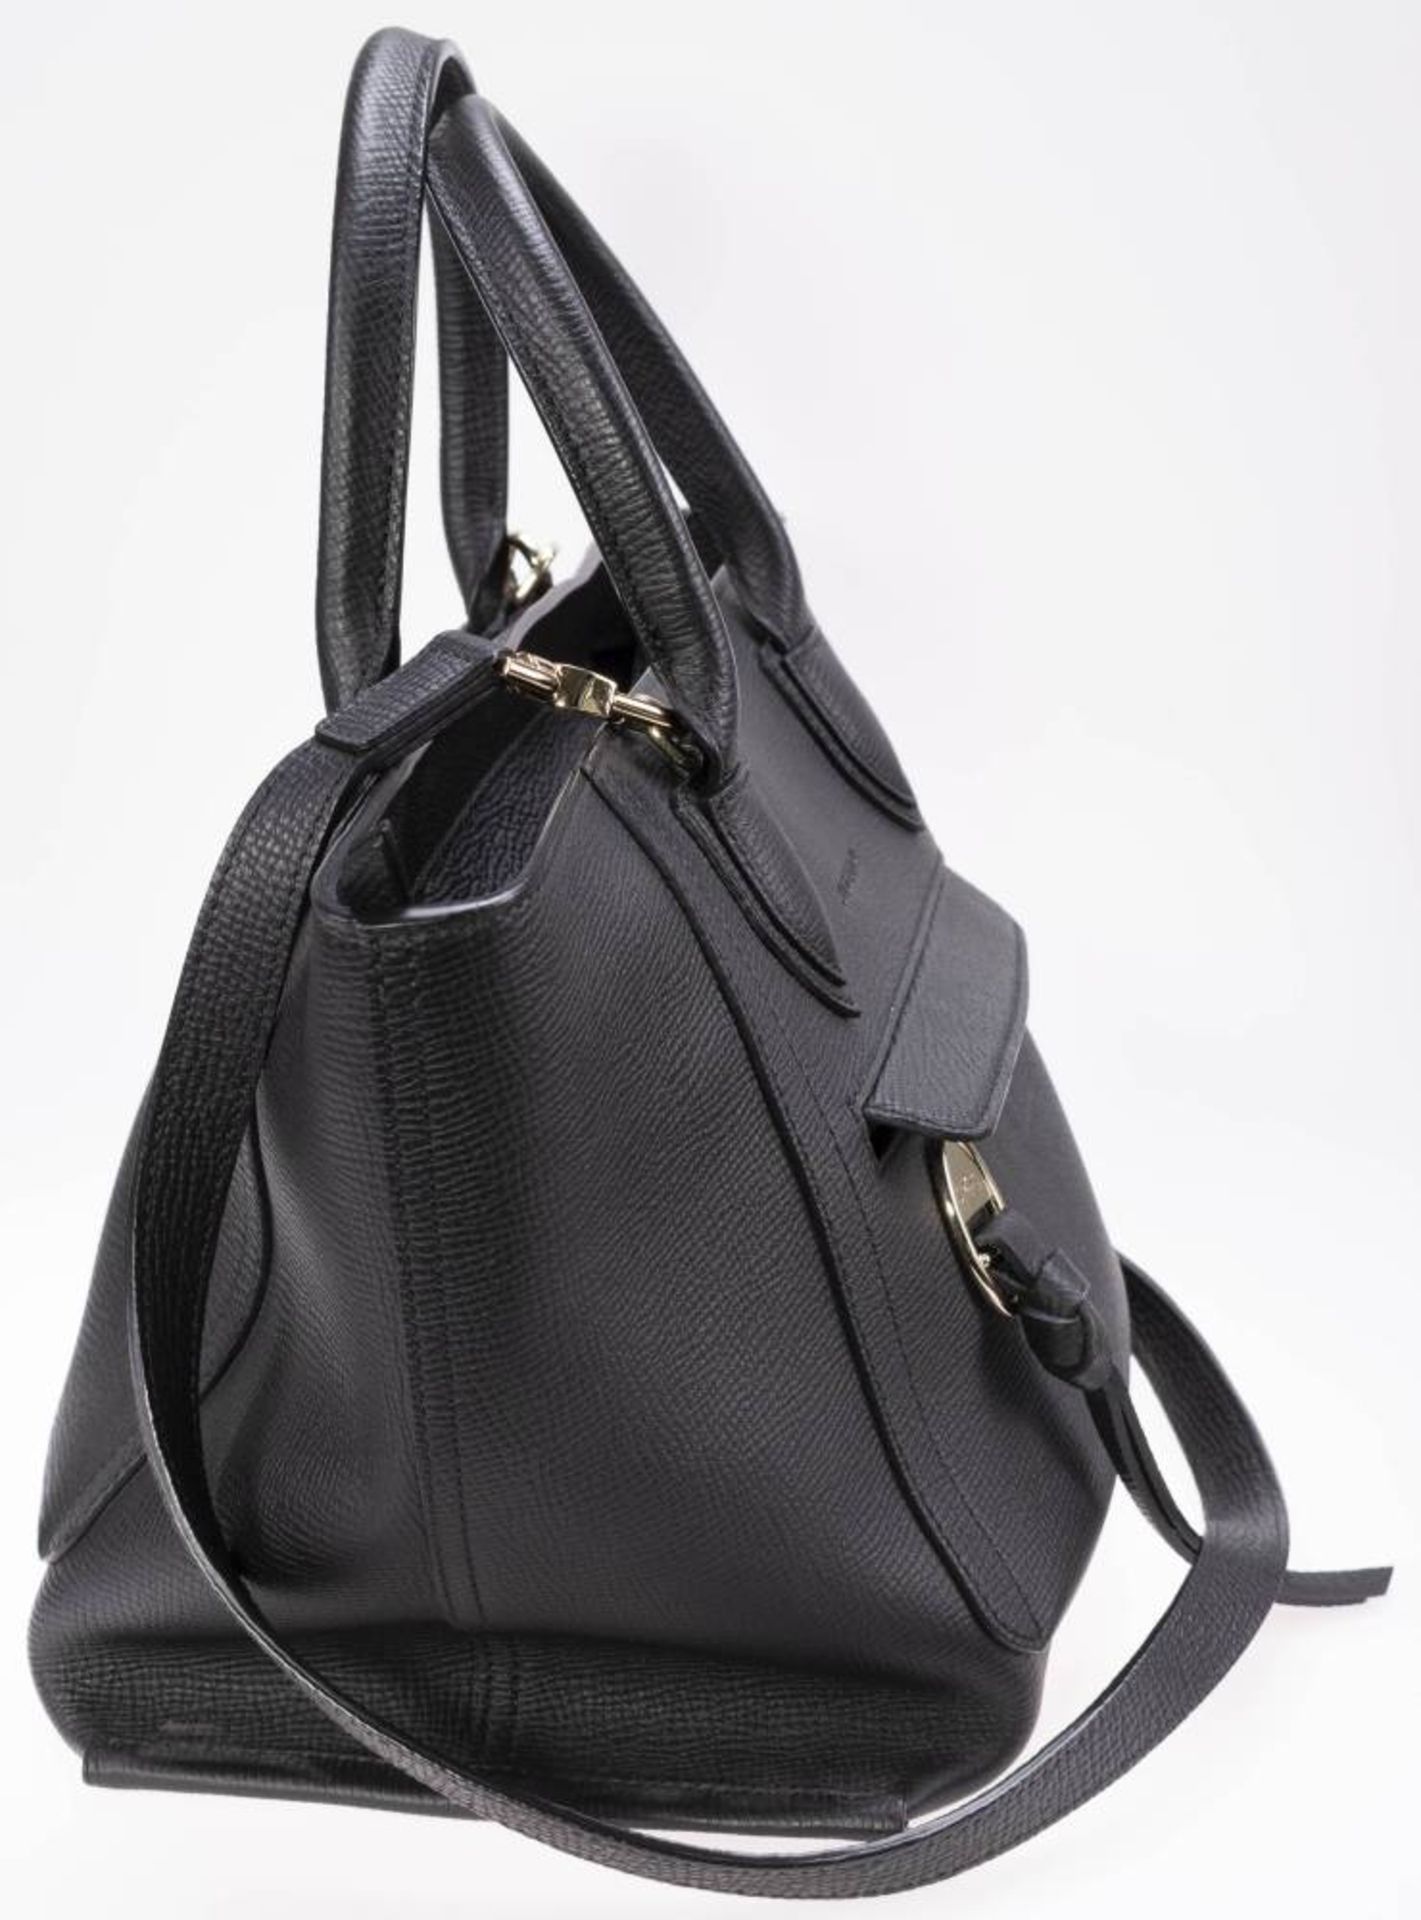 Longchamp Shopper, schwarzes Leder, goldfarbenes Metall, Außentasche mit Reißverschluss, innen - Image 3 of 6